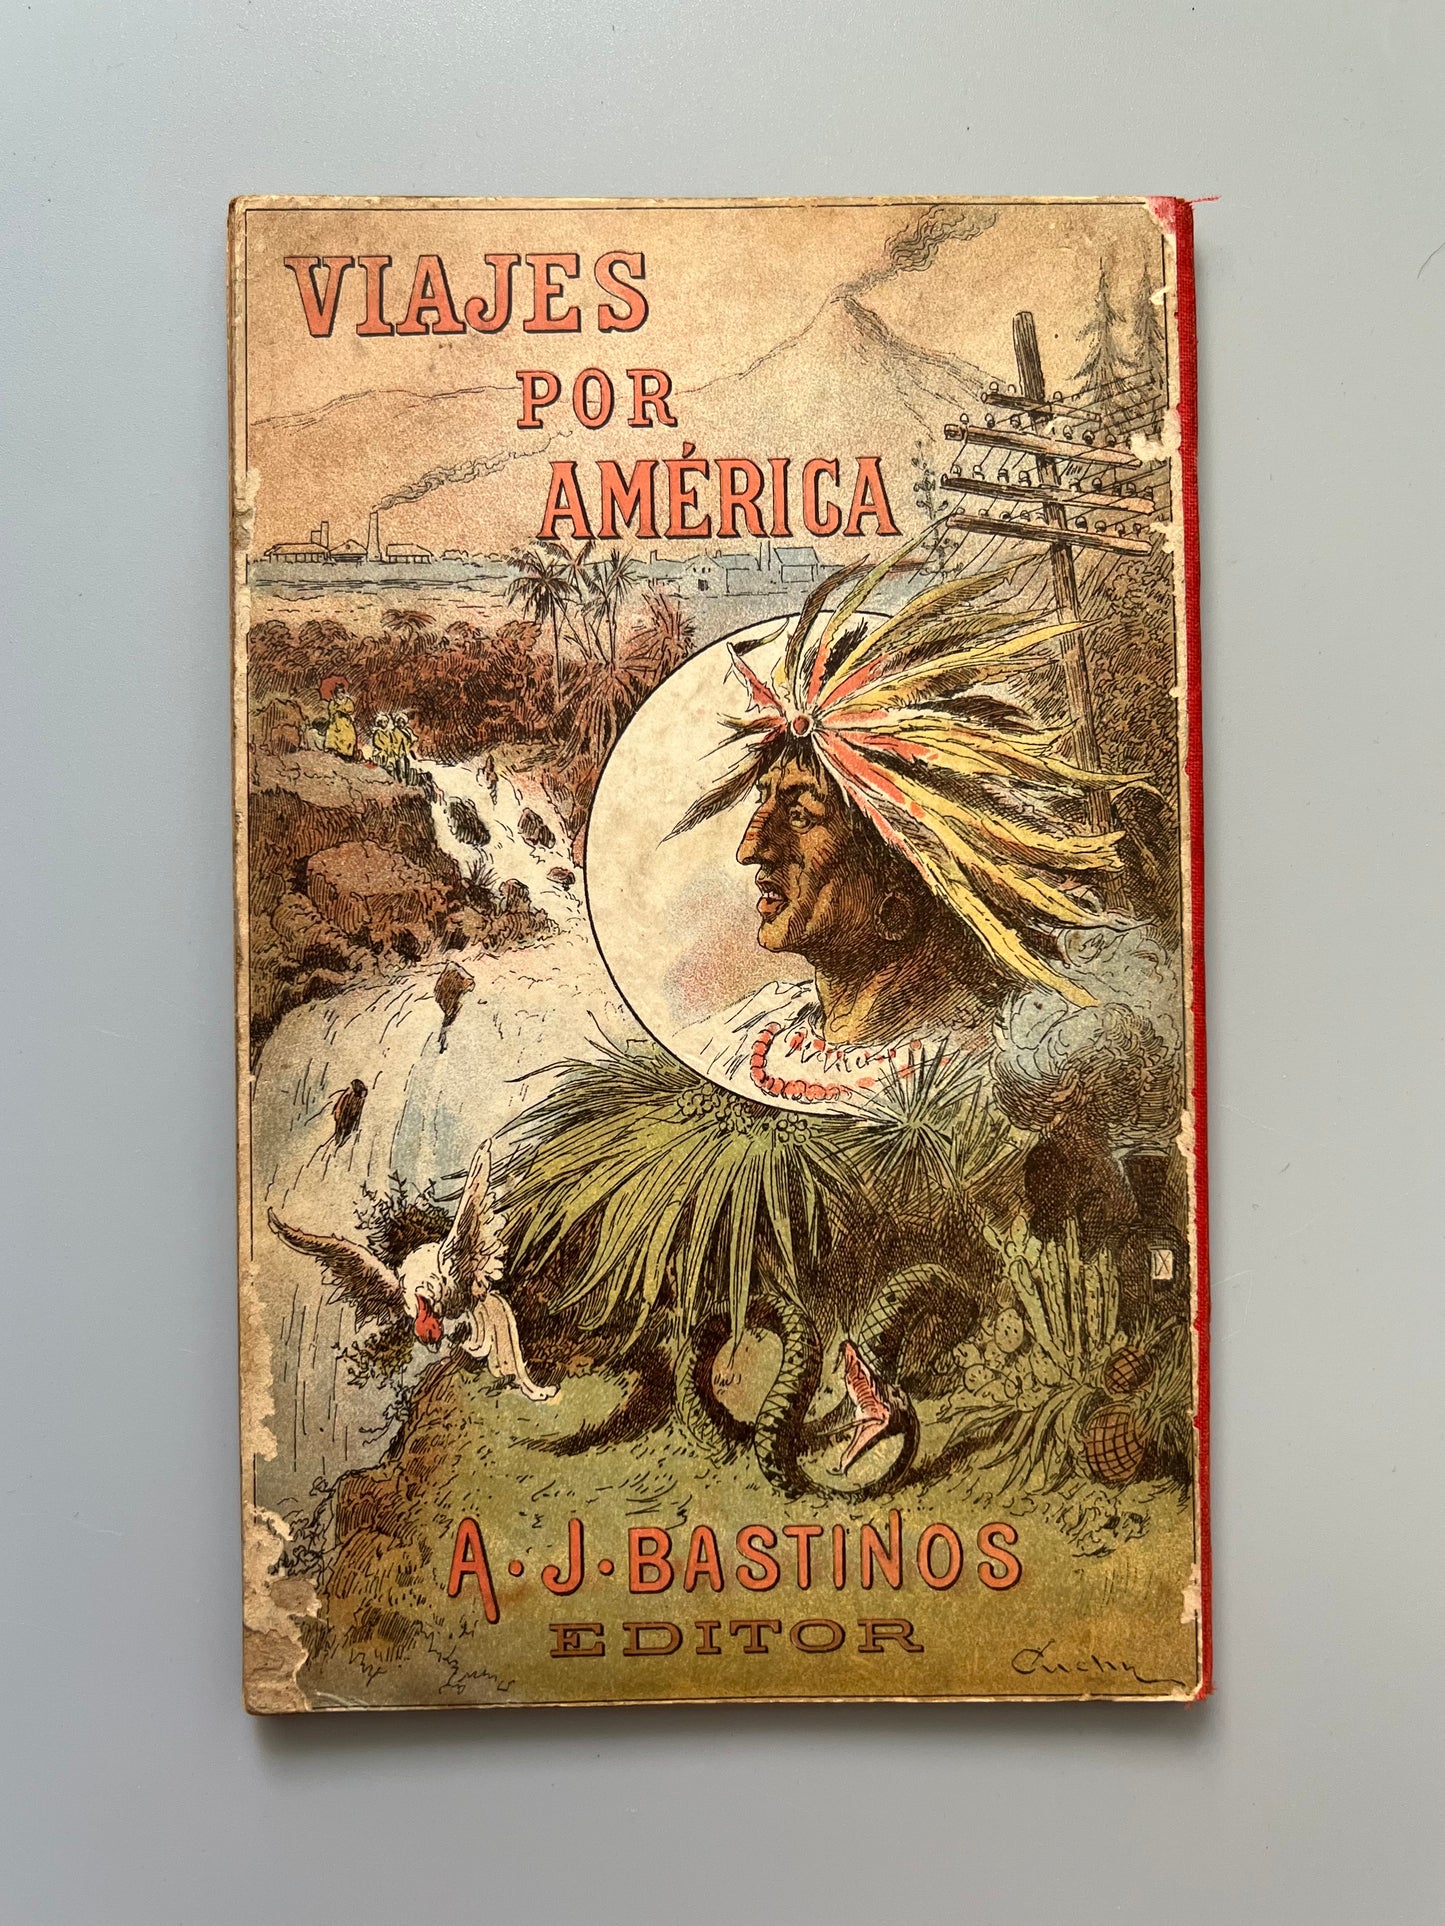 La América colombiana, Arturo Aldea - Librería de Antonio J. Bastinos, 1898